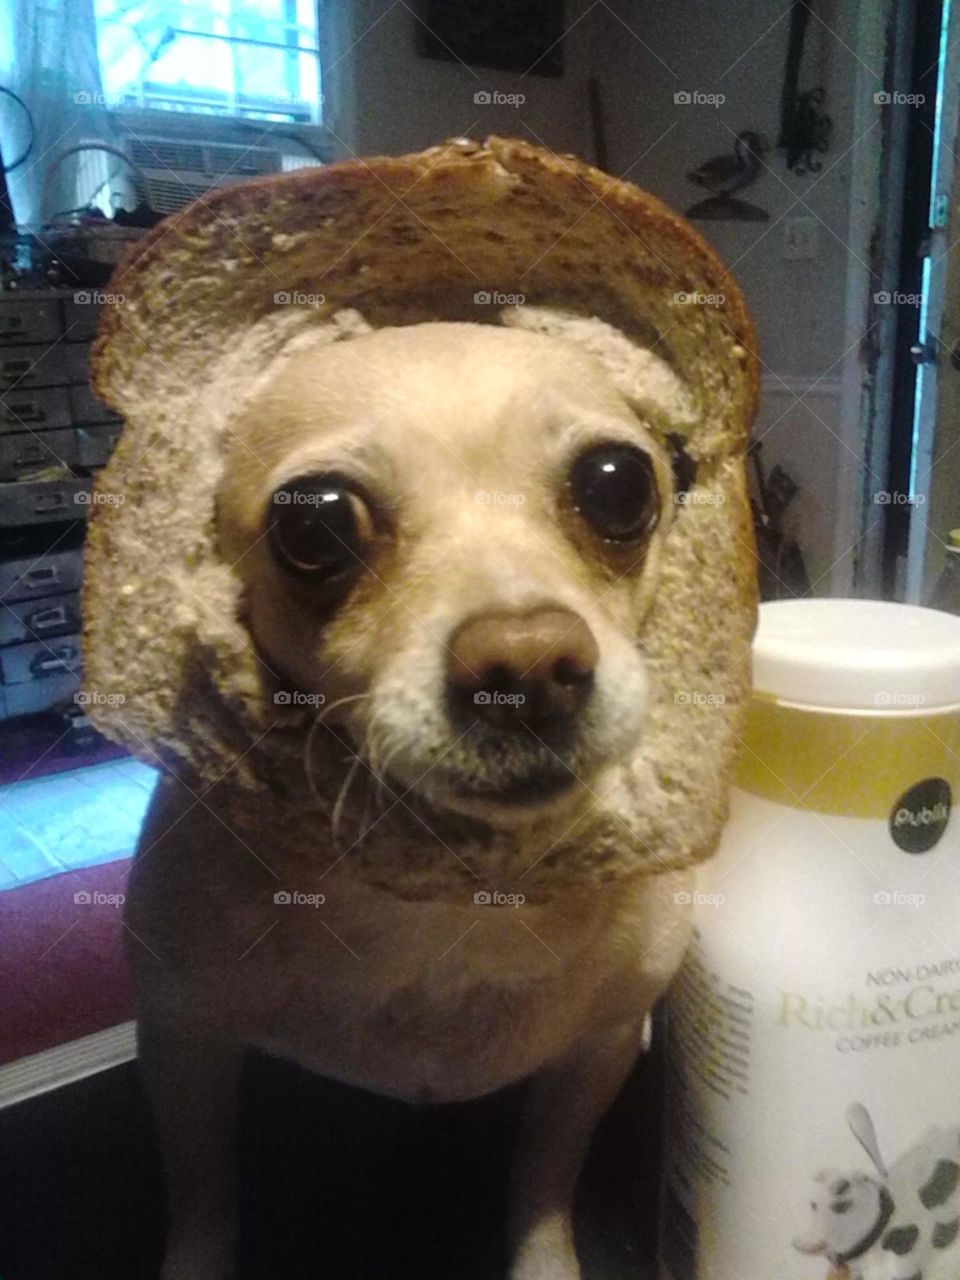 "In Bread"lol